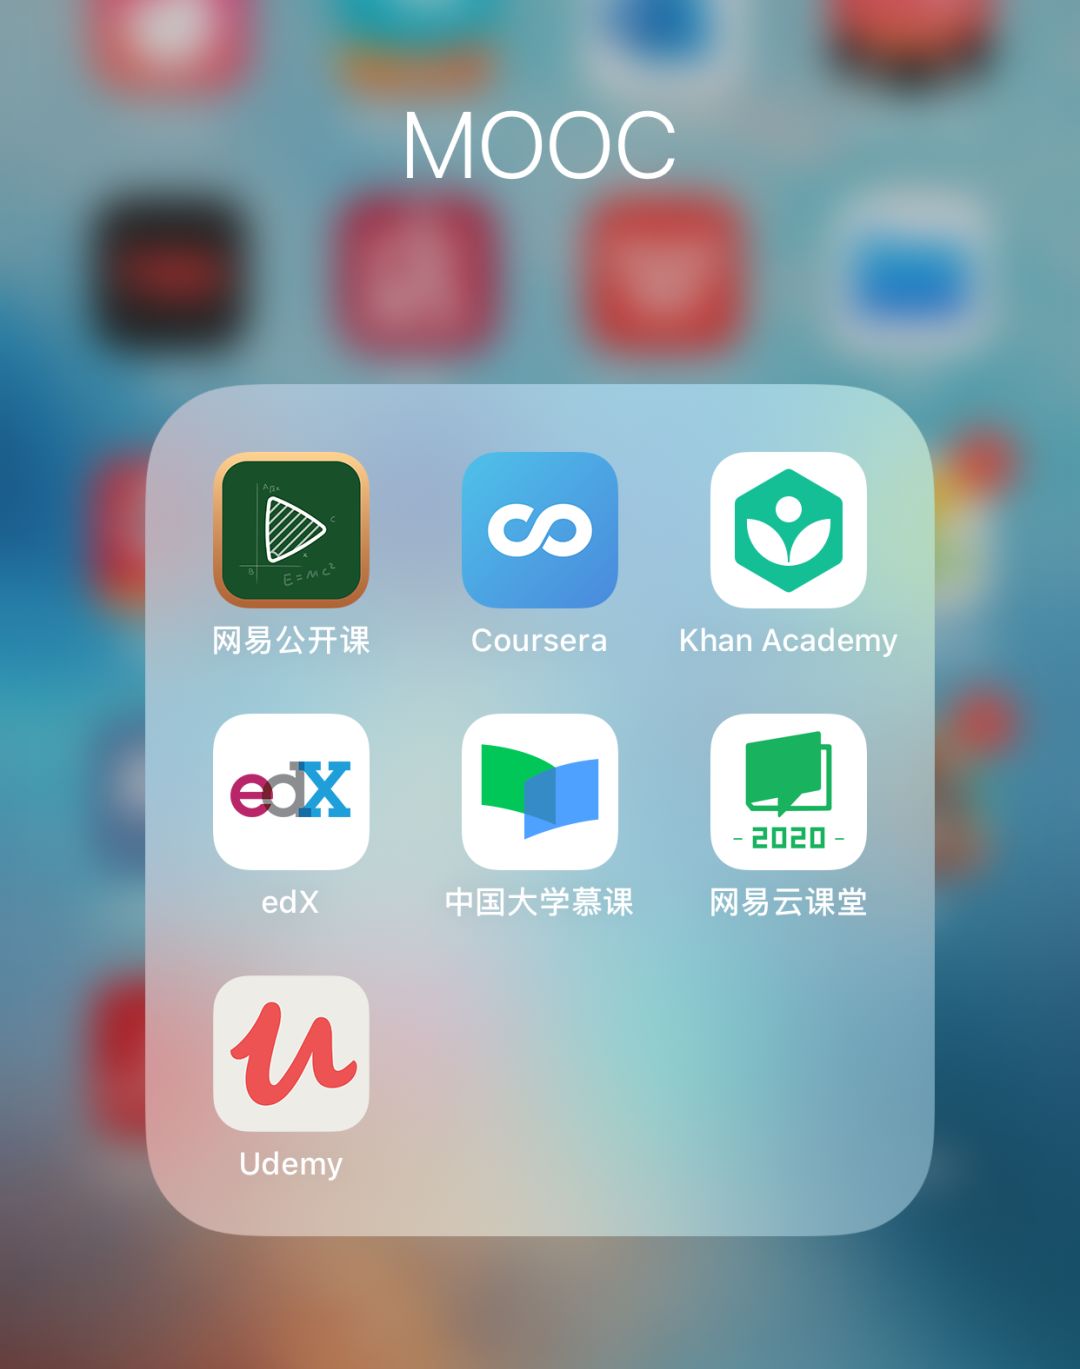 以下是在国内app store即可下载的mooc家族app:以上国外常用mooc平台